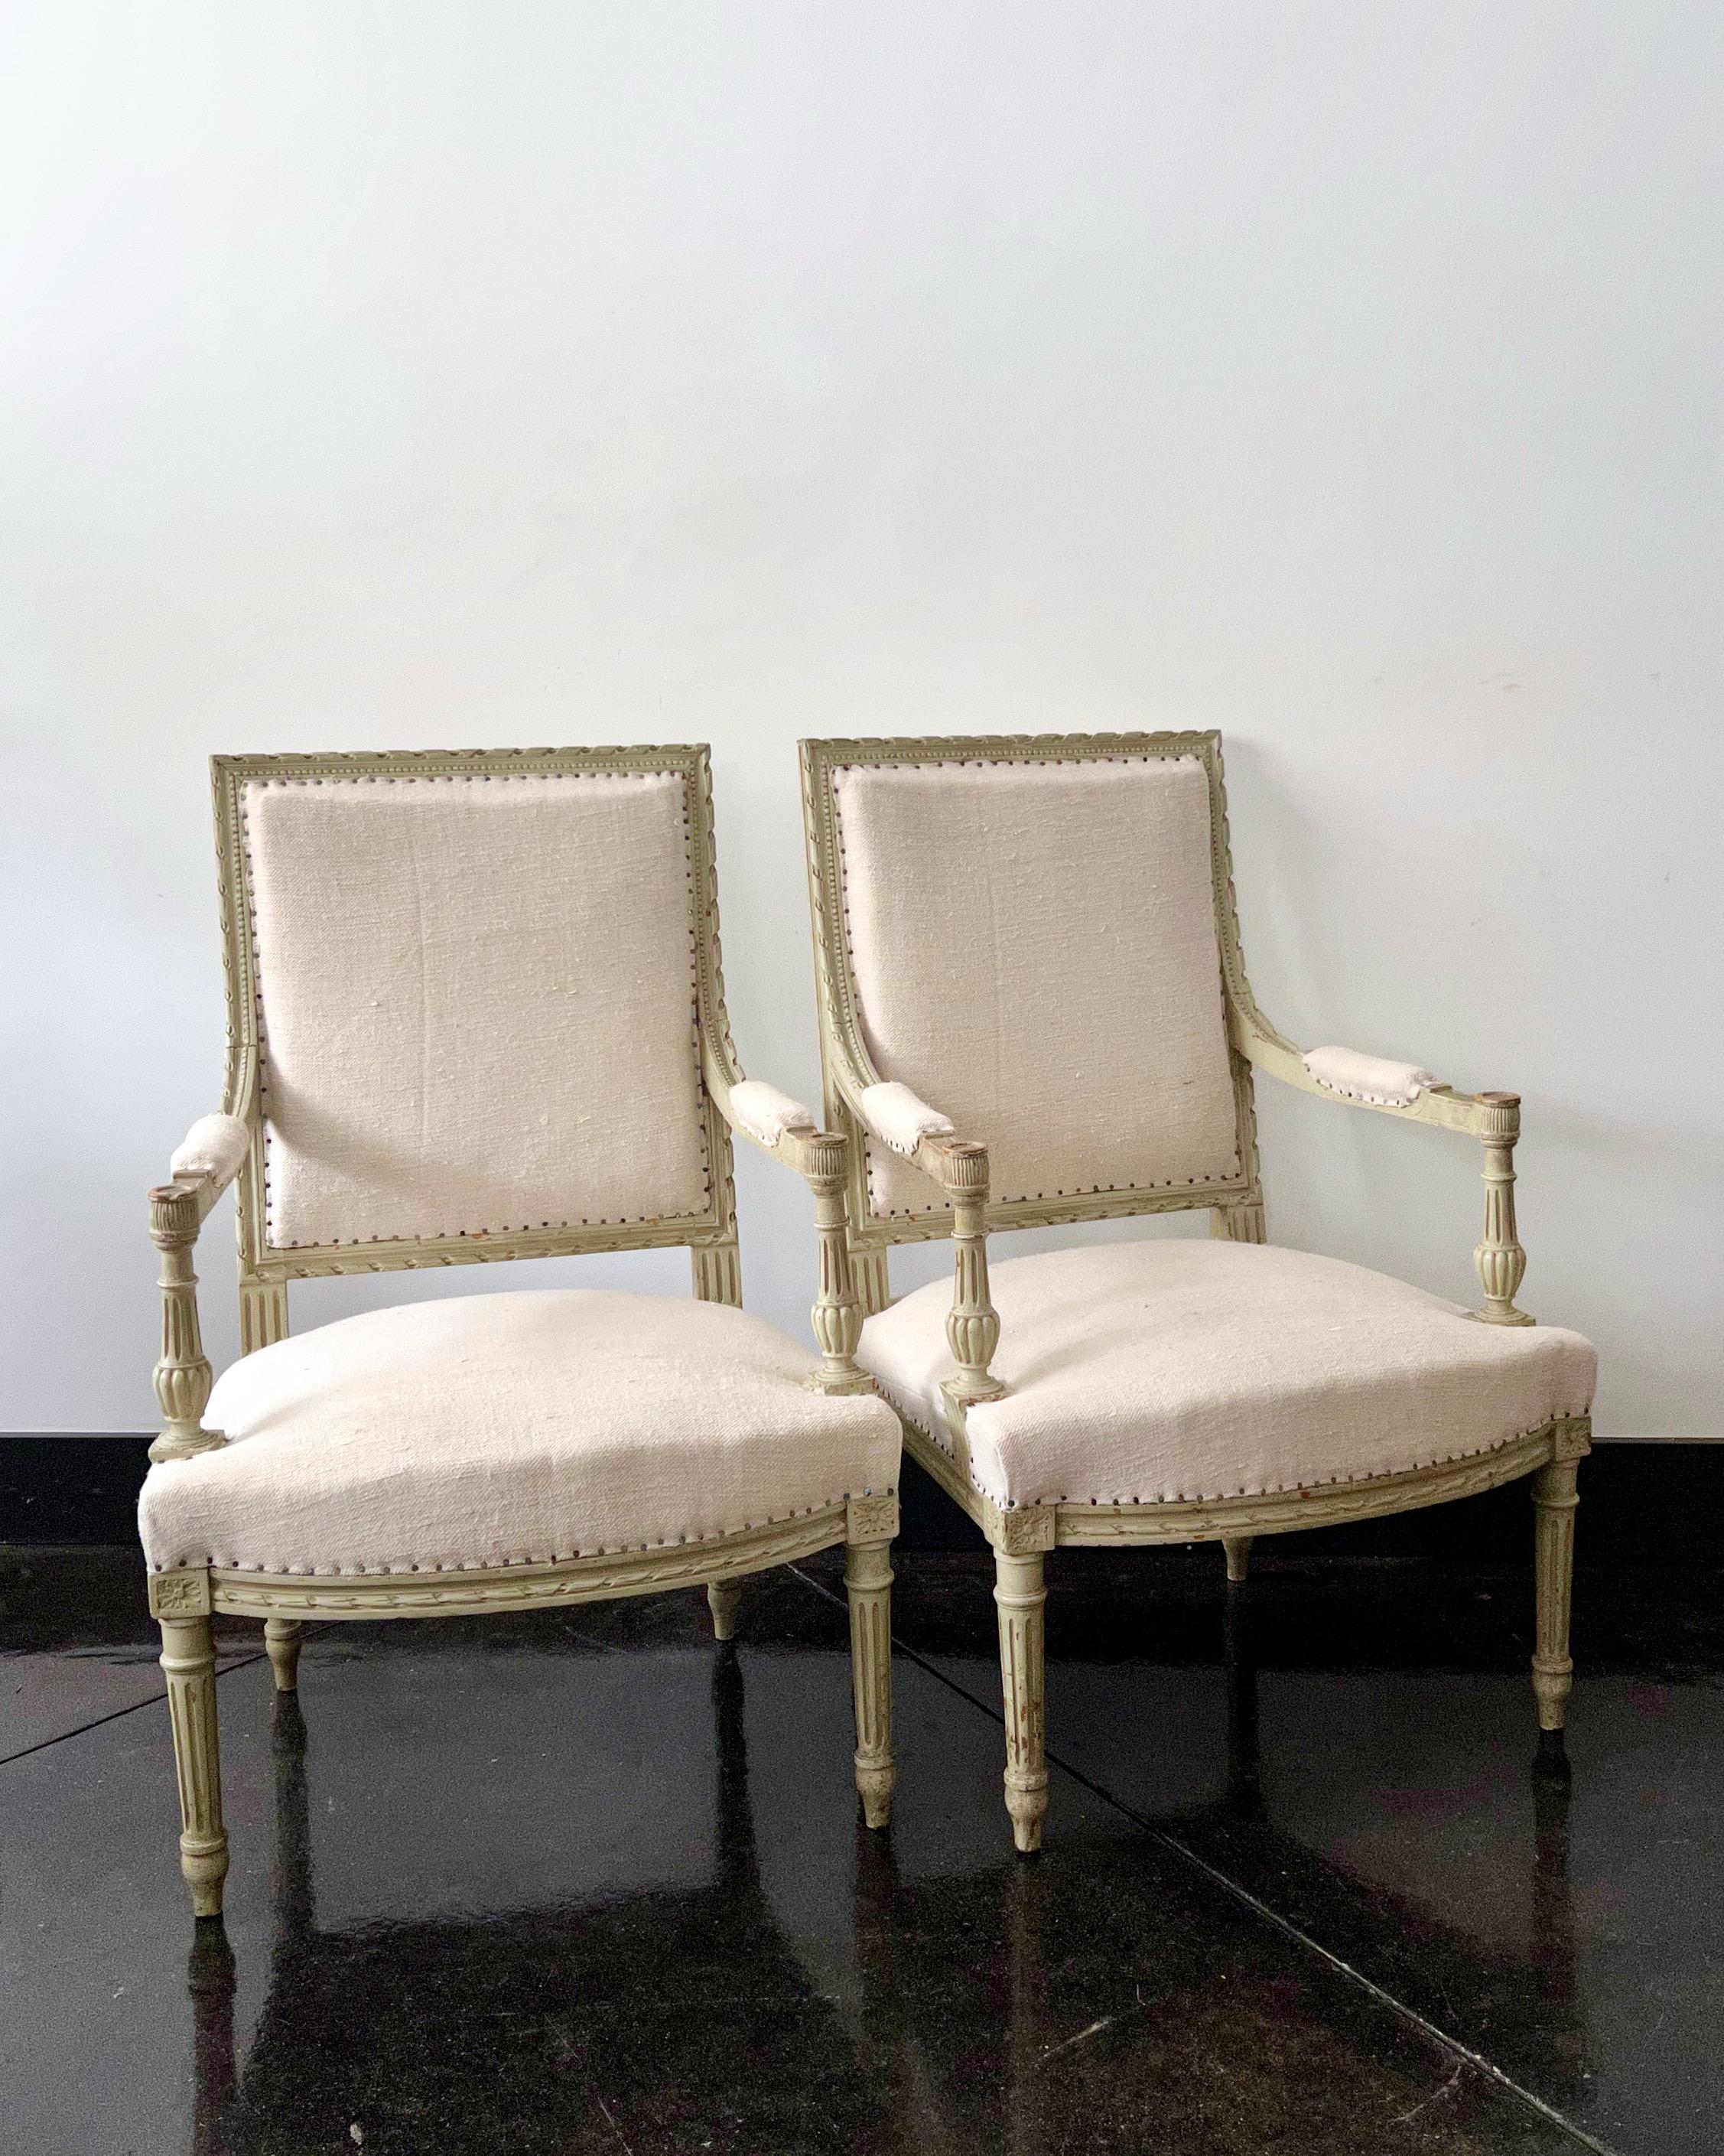 Ein Paar französische Sessel à la Reine aus dem 19. Jahrhundert mit flacher Rückenlehne und reich geschnitzten Armlehnen mit Akanthus und Rosetten auf kannelierten, konischen Beinen, die sich in ihrem ursprünglichen, abgenutzten Zustand